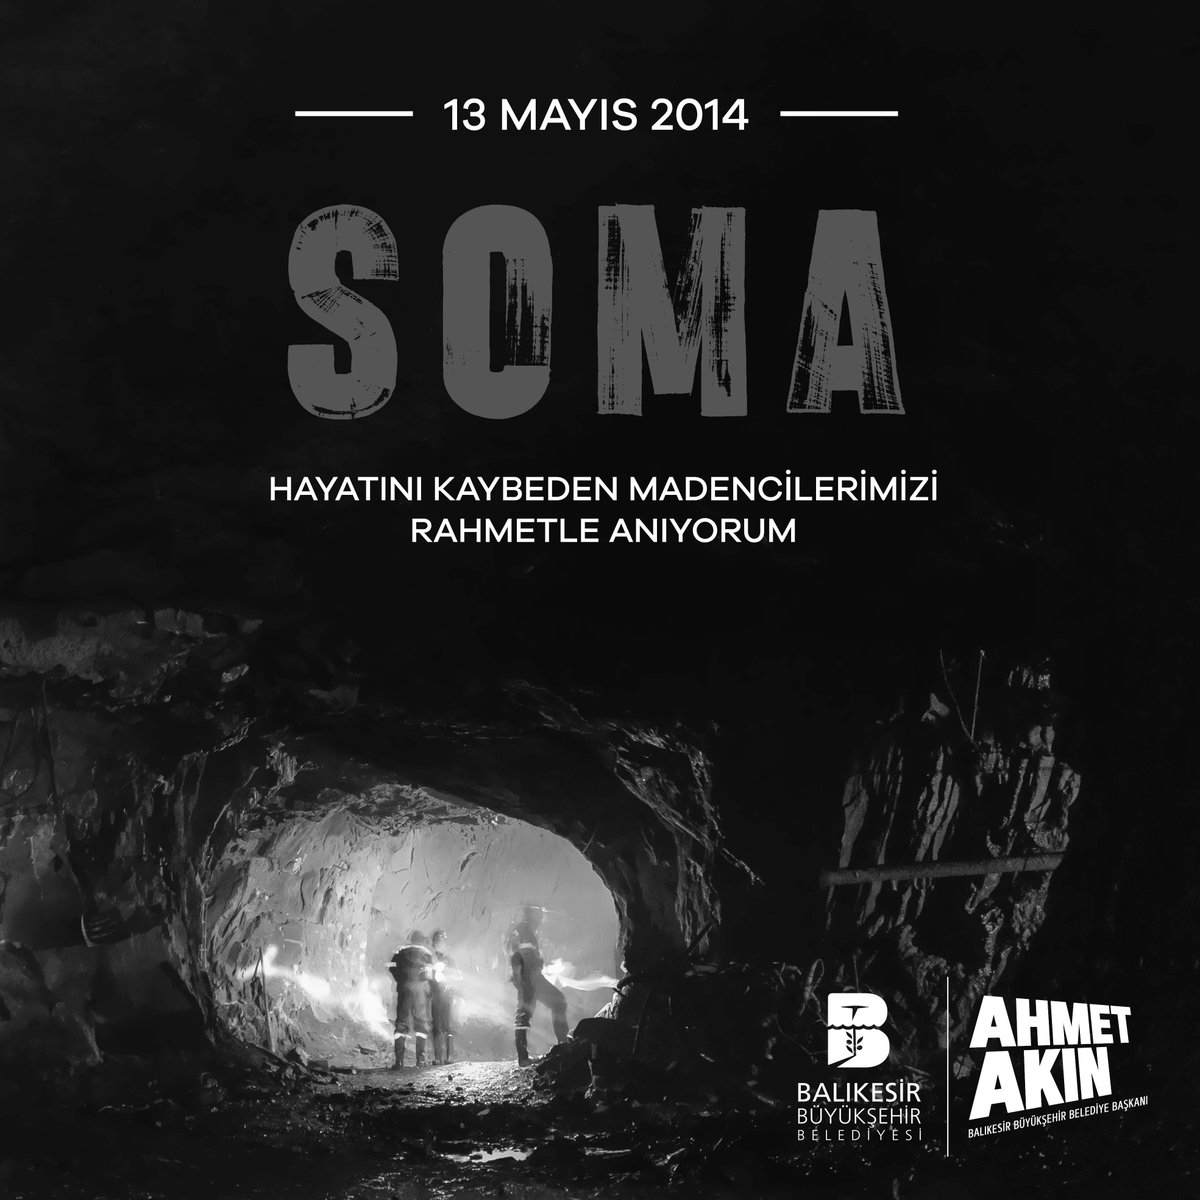 Hiç unutmadık, asla unutmayacağız.

Bundan tam 10 yıl önce #Soma’da meydana gelen maden faciasında hayatını kaybeden madencilerimizi saygı ve rahmetle anıyorum.